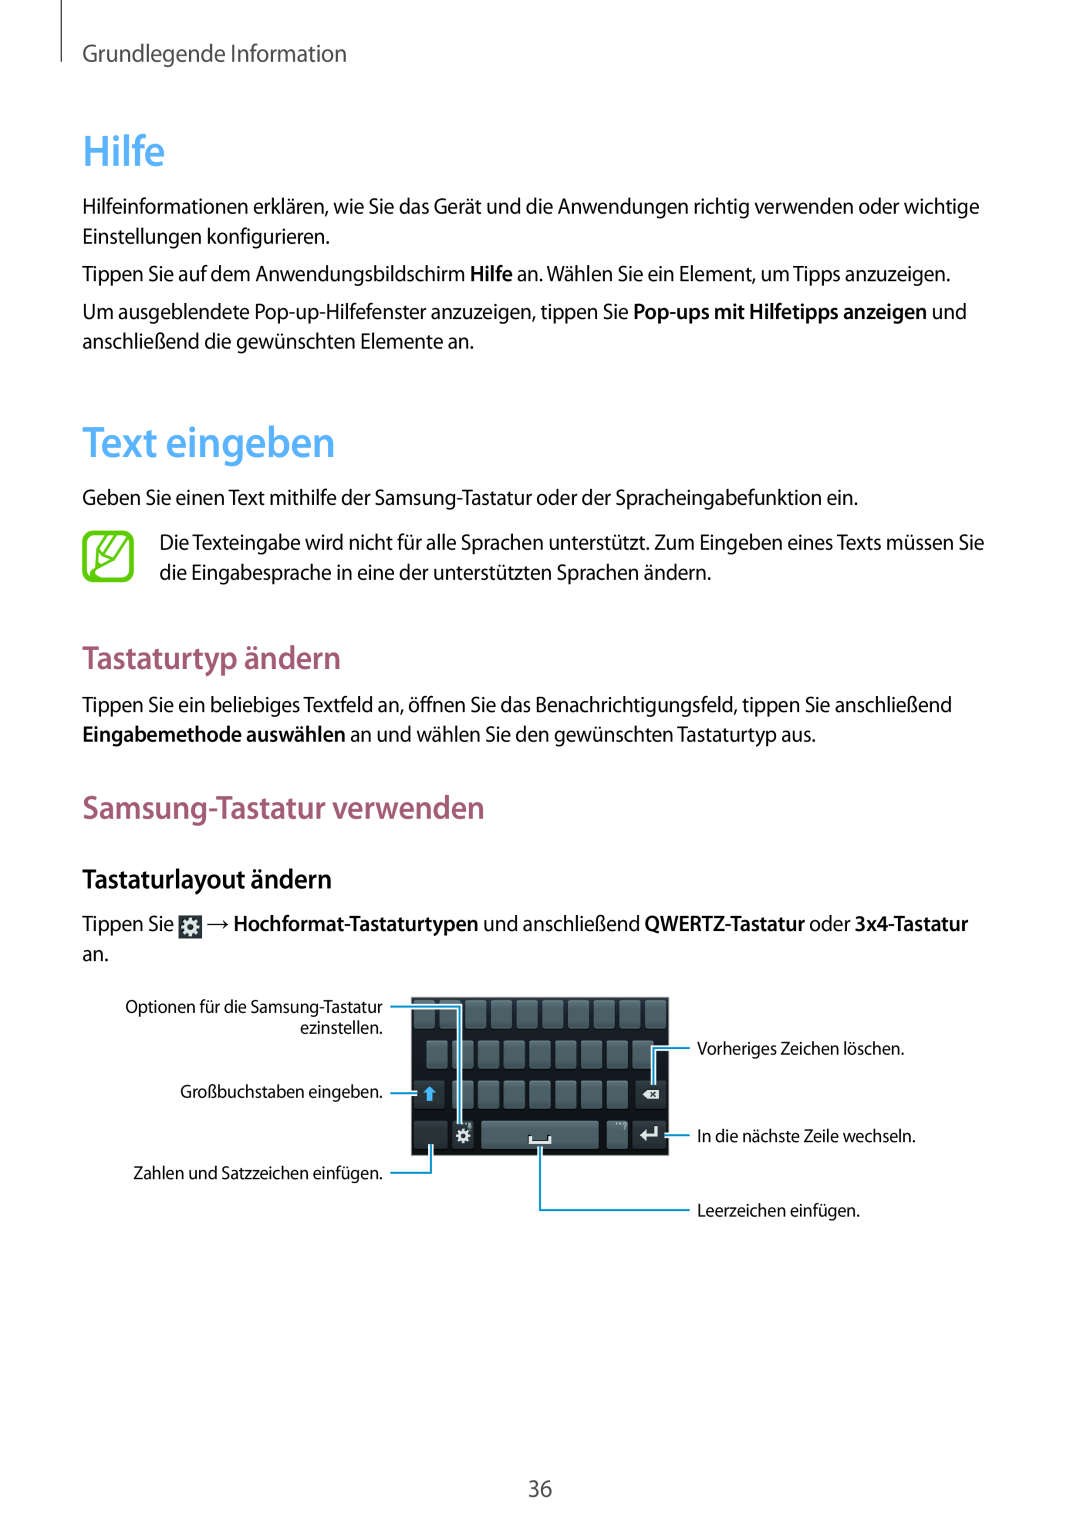 Samsung GT-I8190OKATUR manual Hilfe, Text eingeben, Tastaturtyp ändern, Samsung-Tastatur verwenden, Tastaturlayout ändern 